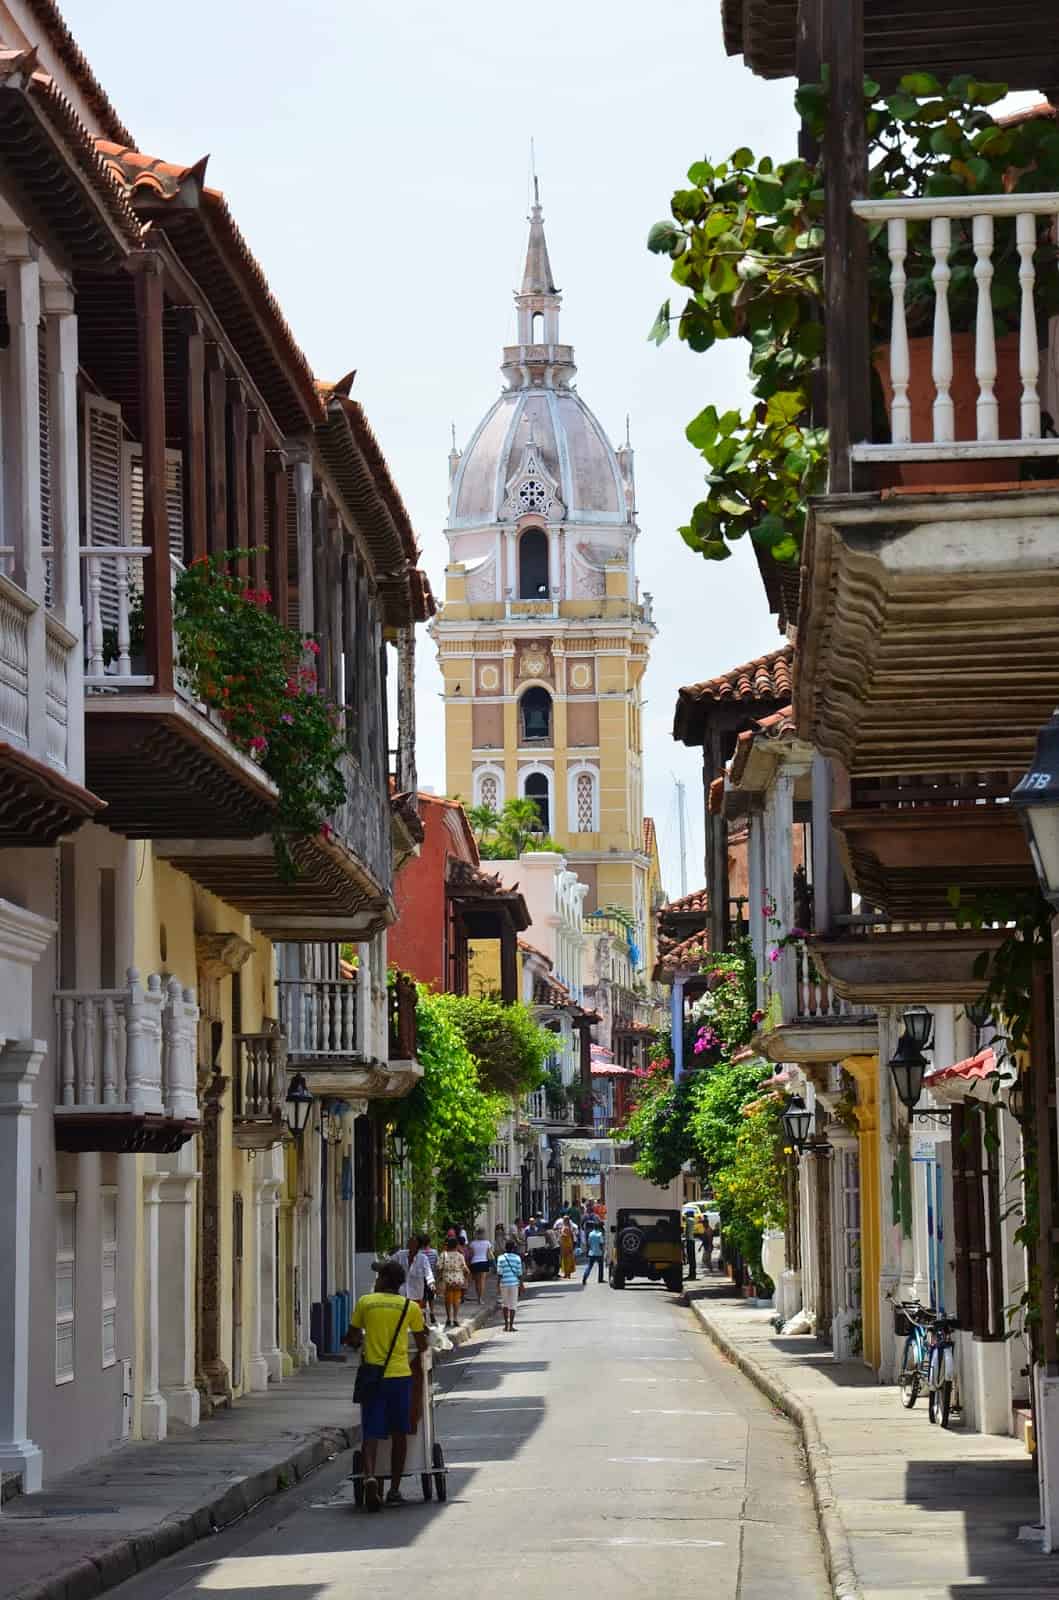 Looking towards the cathedral in El Centro, Cartagena, Bolívar, Colombia